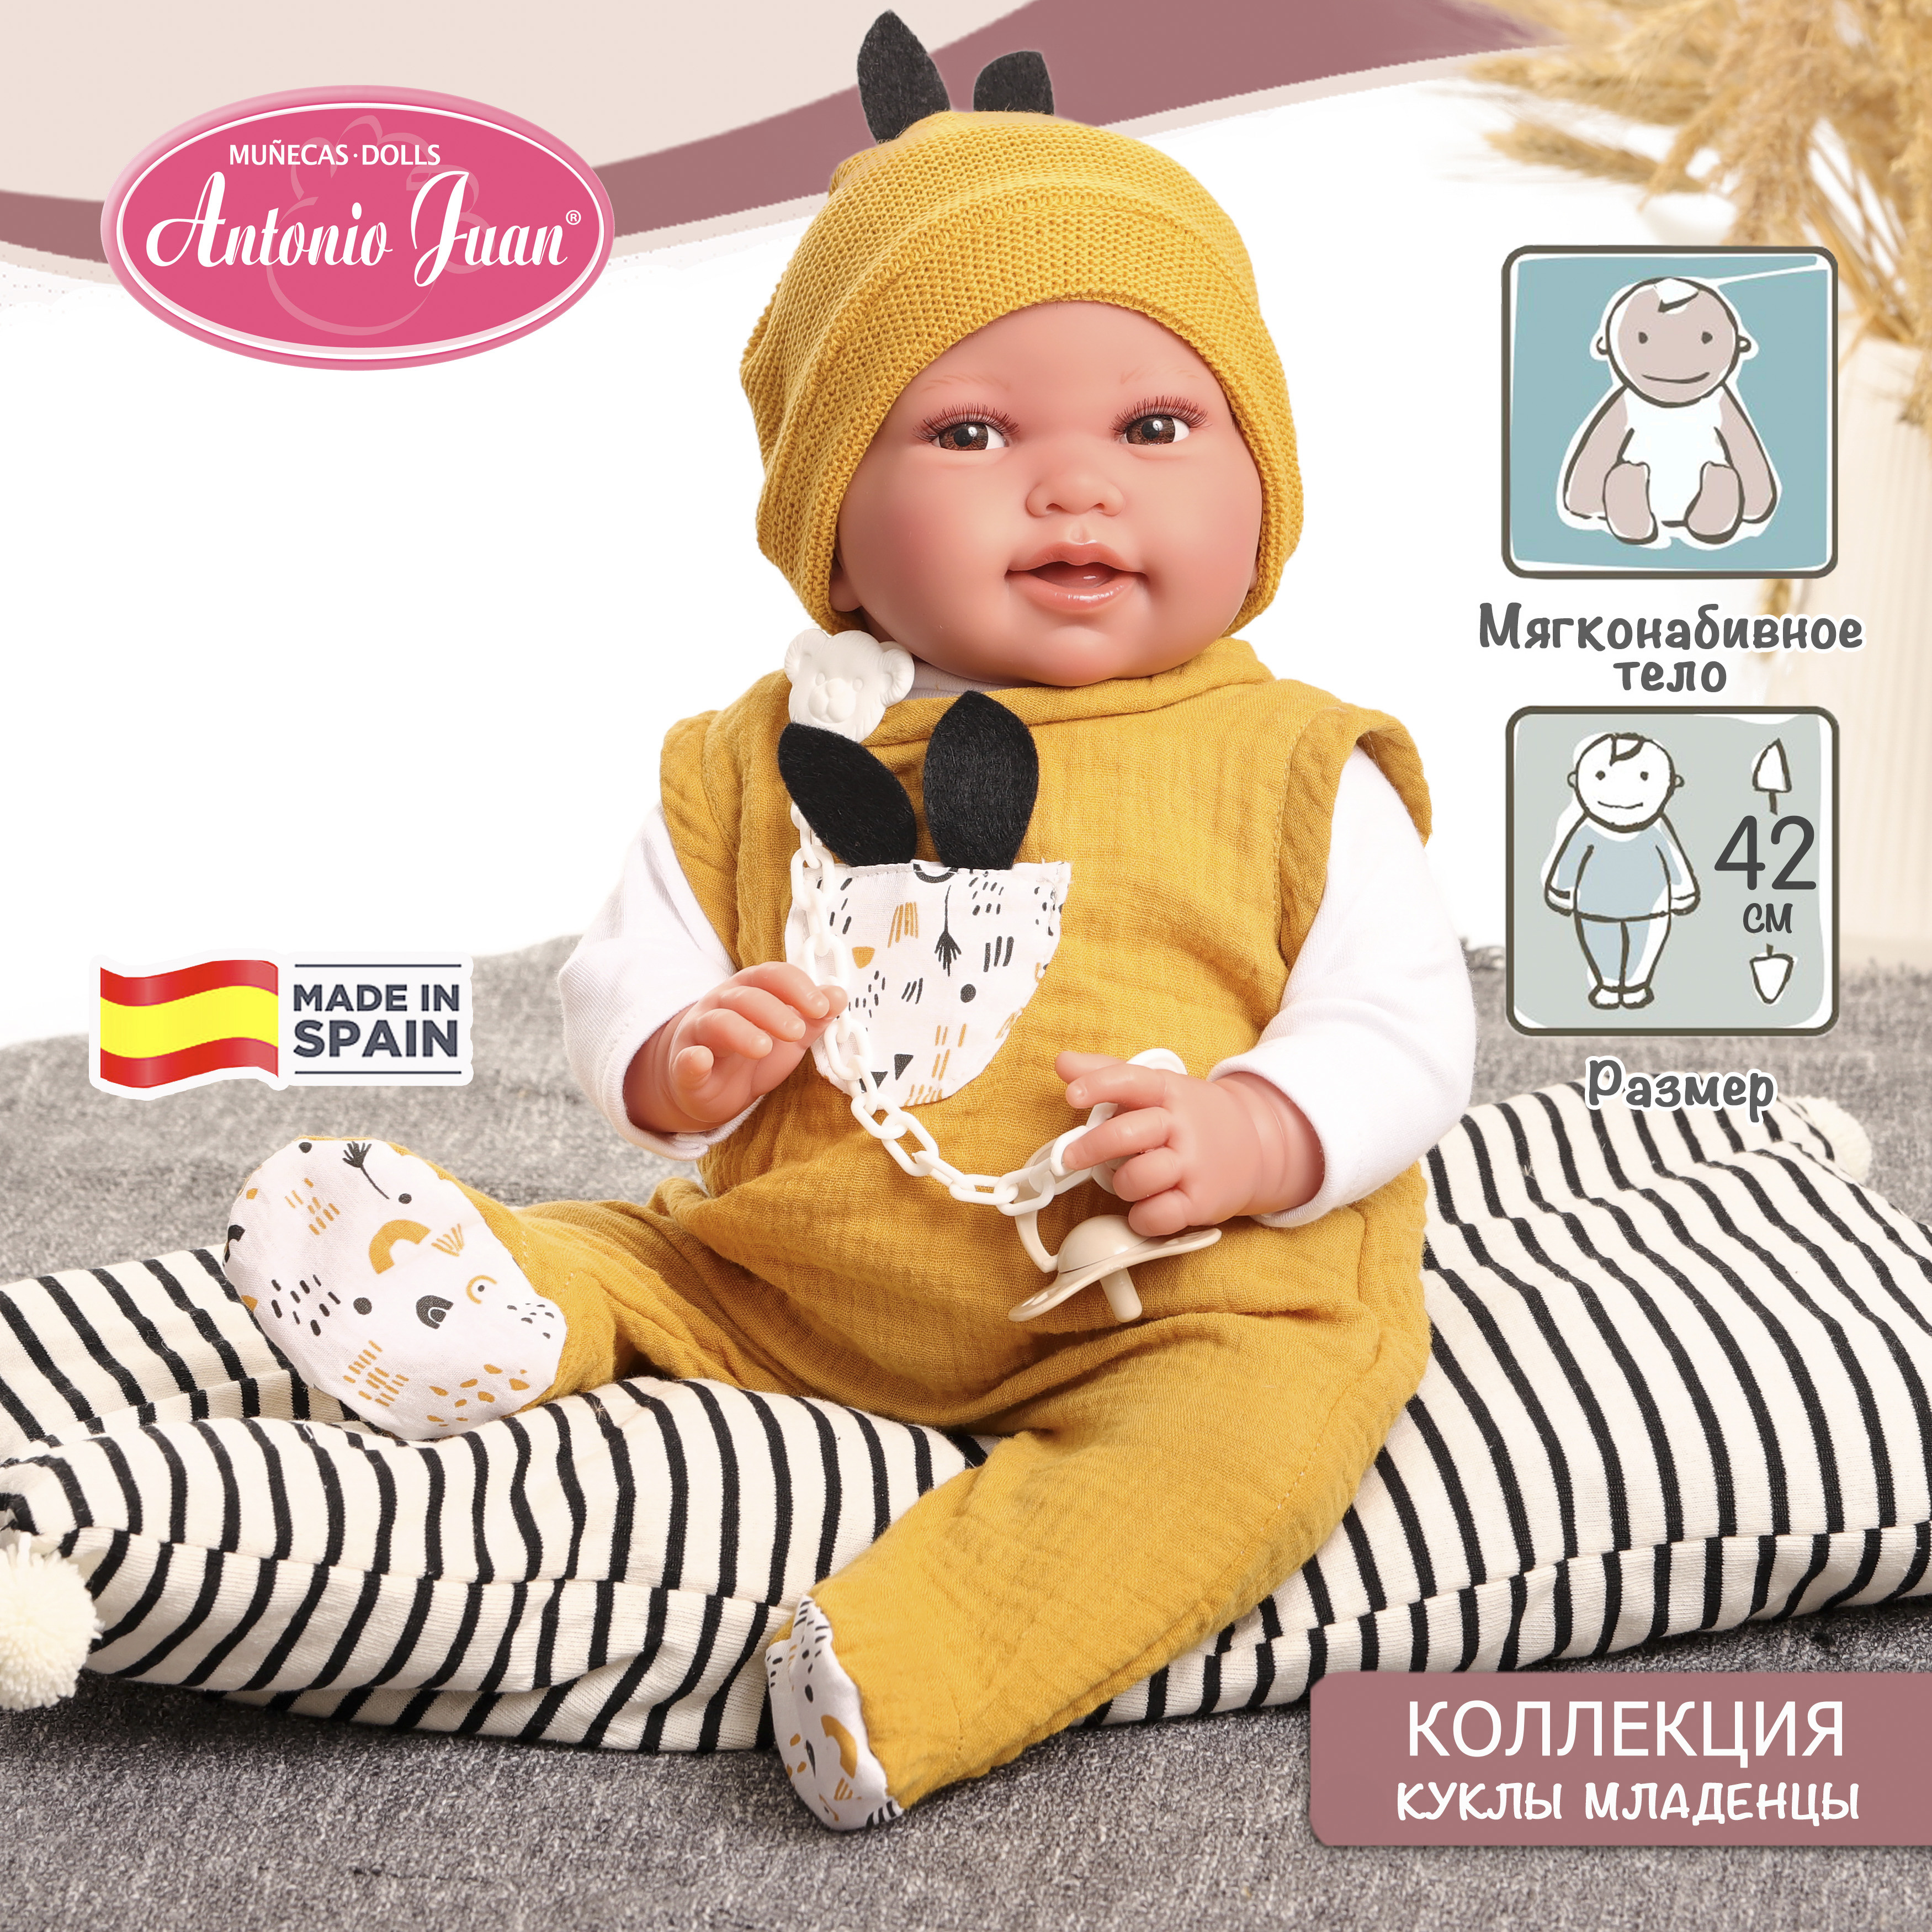 Кукла младенец испанская Antonio Juan Пипо в жёлтом, 42 см, мягконабивная 33234 кукла испанская antonio juan белла в розовых наушниках 45 см виниловая 28326